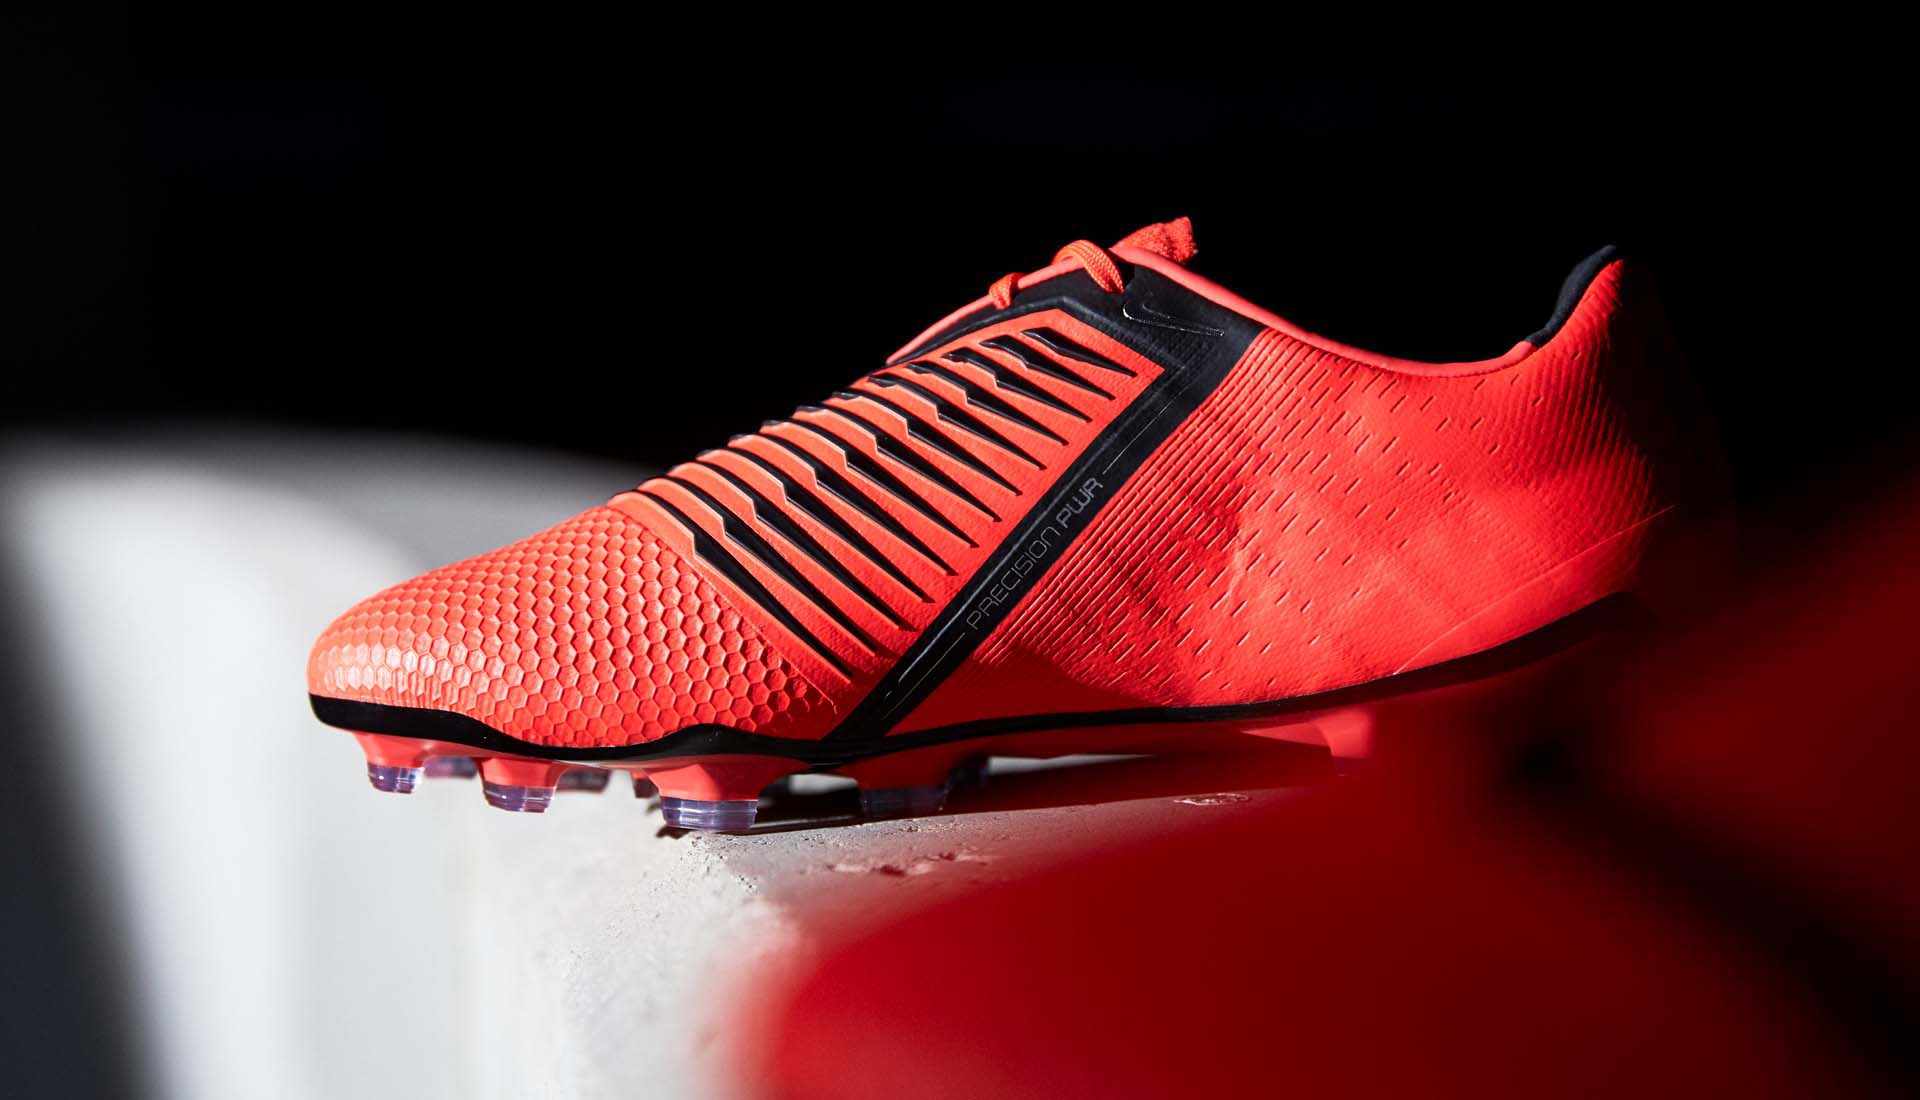 Giày bóng đá Nike Phantom VNM là mẫu giày thế hệ mới được áp dụng công nghệ flywire